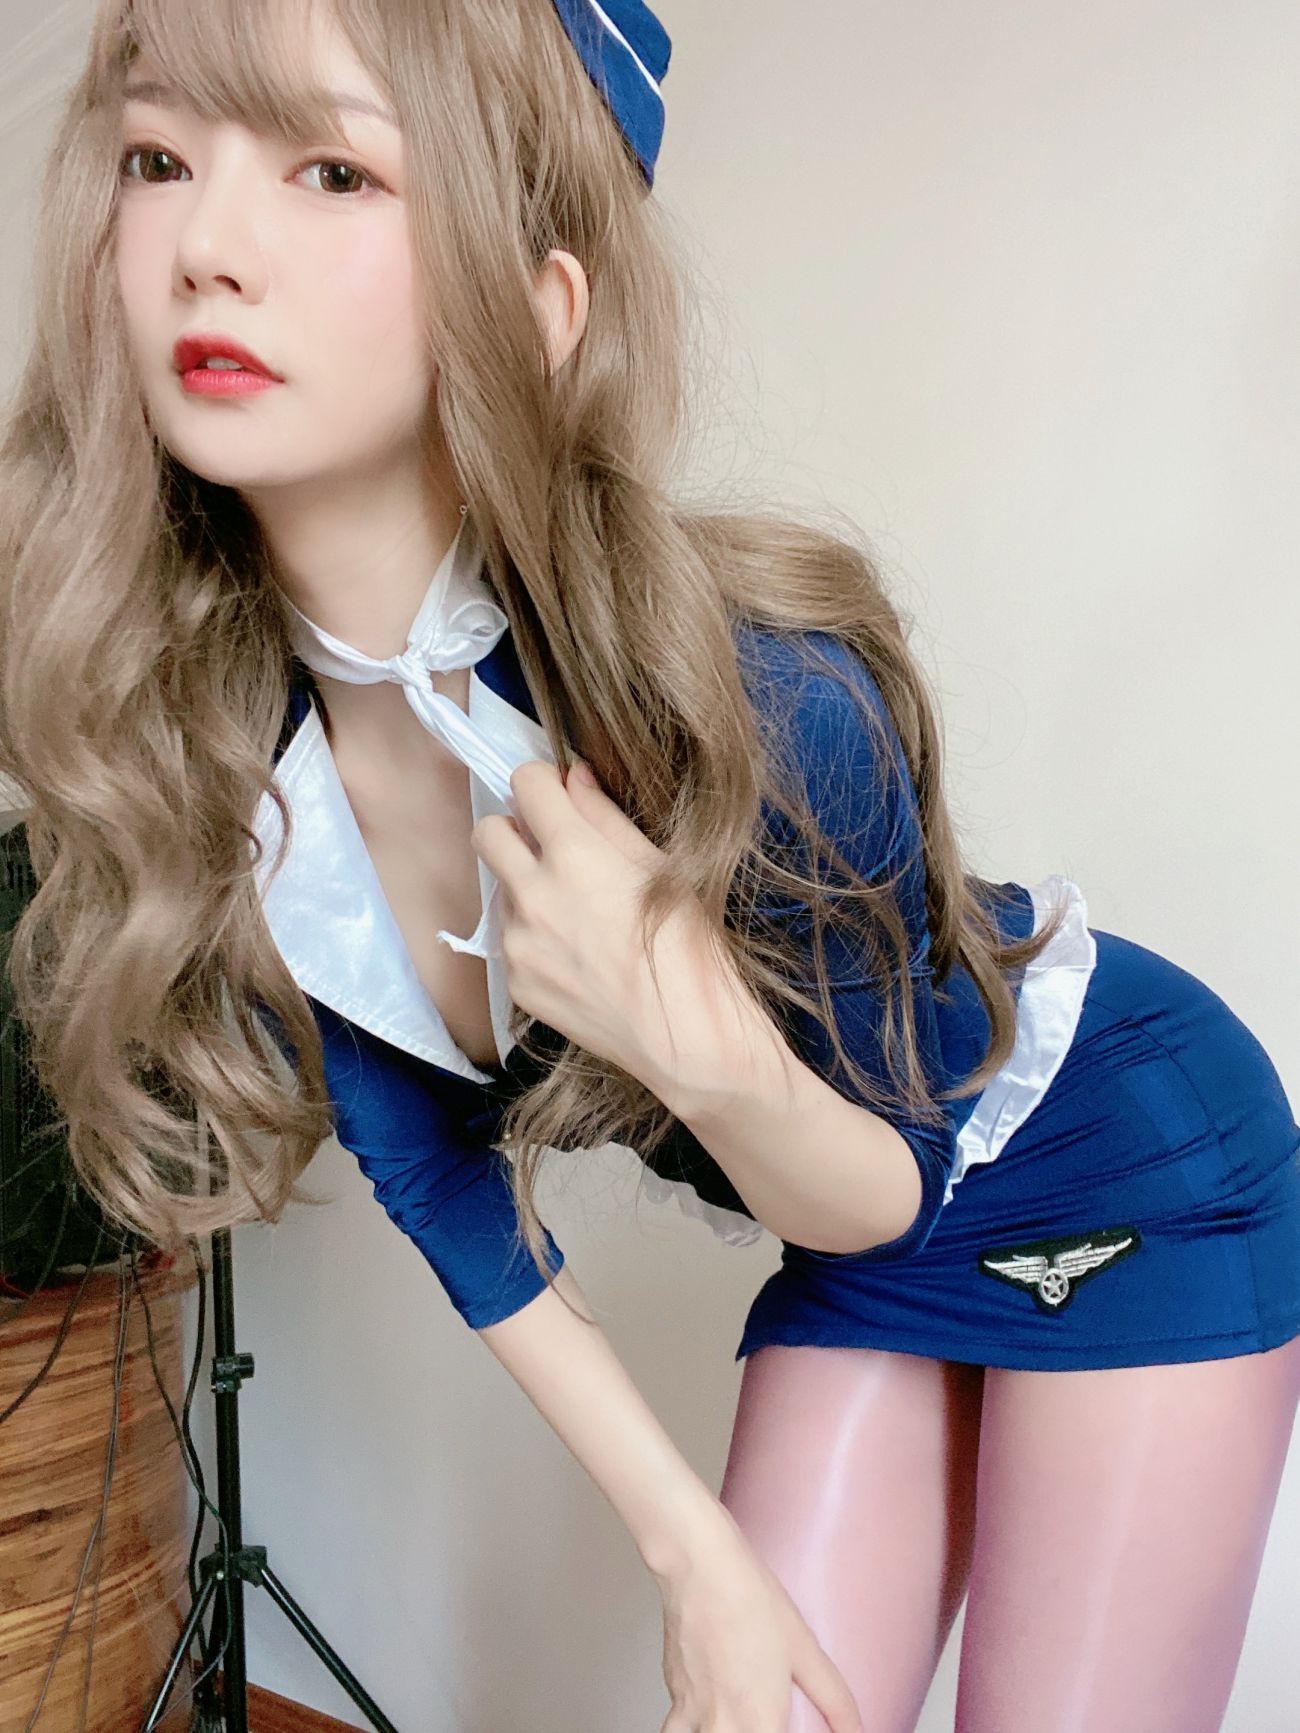 微博美少女51酱性感写真蓝色制服装 (30)